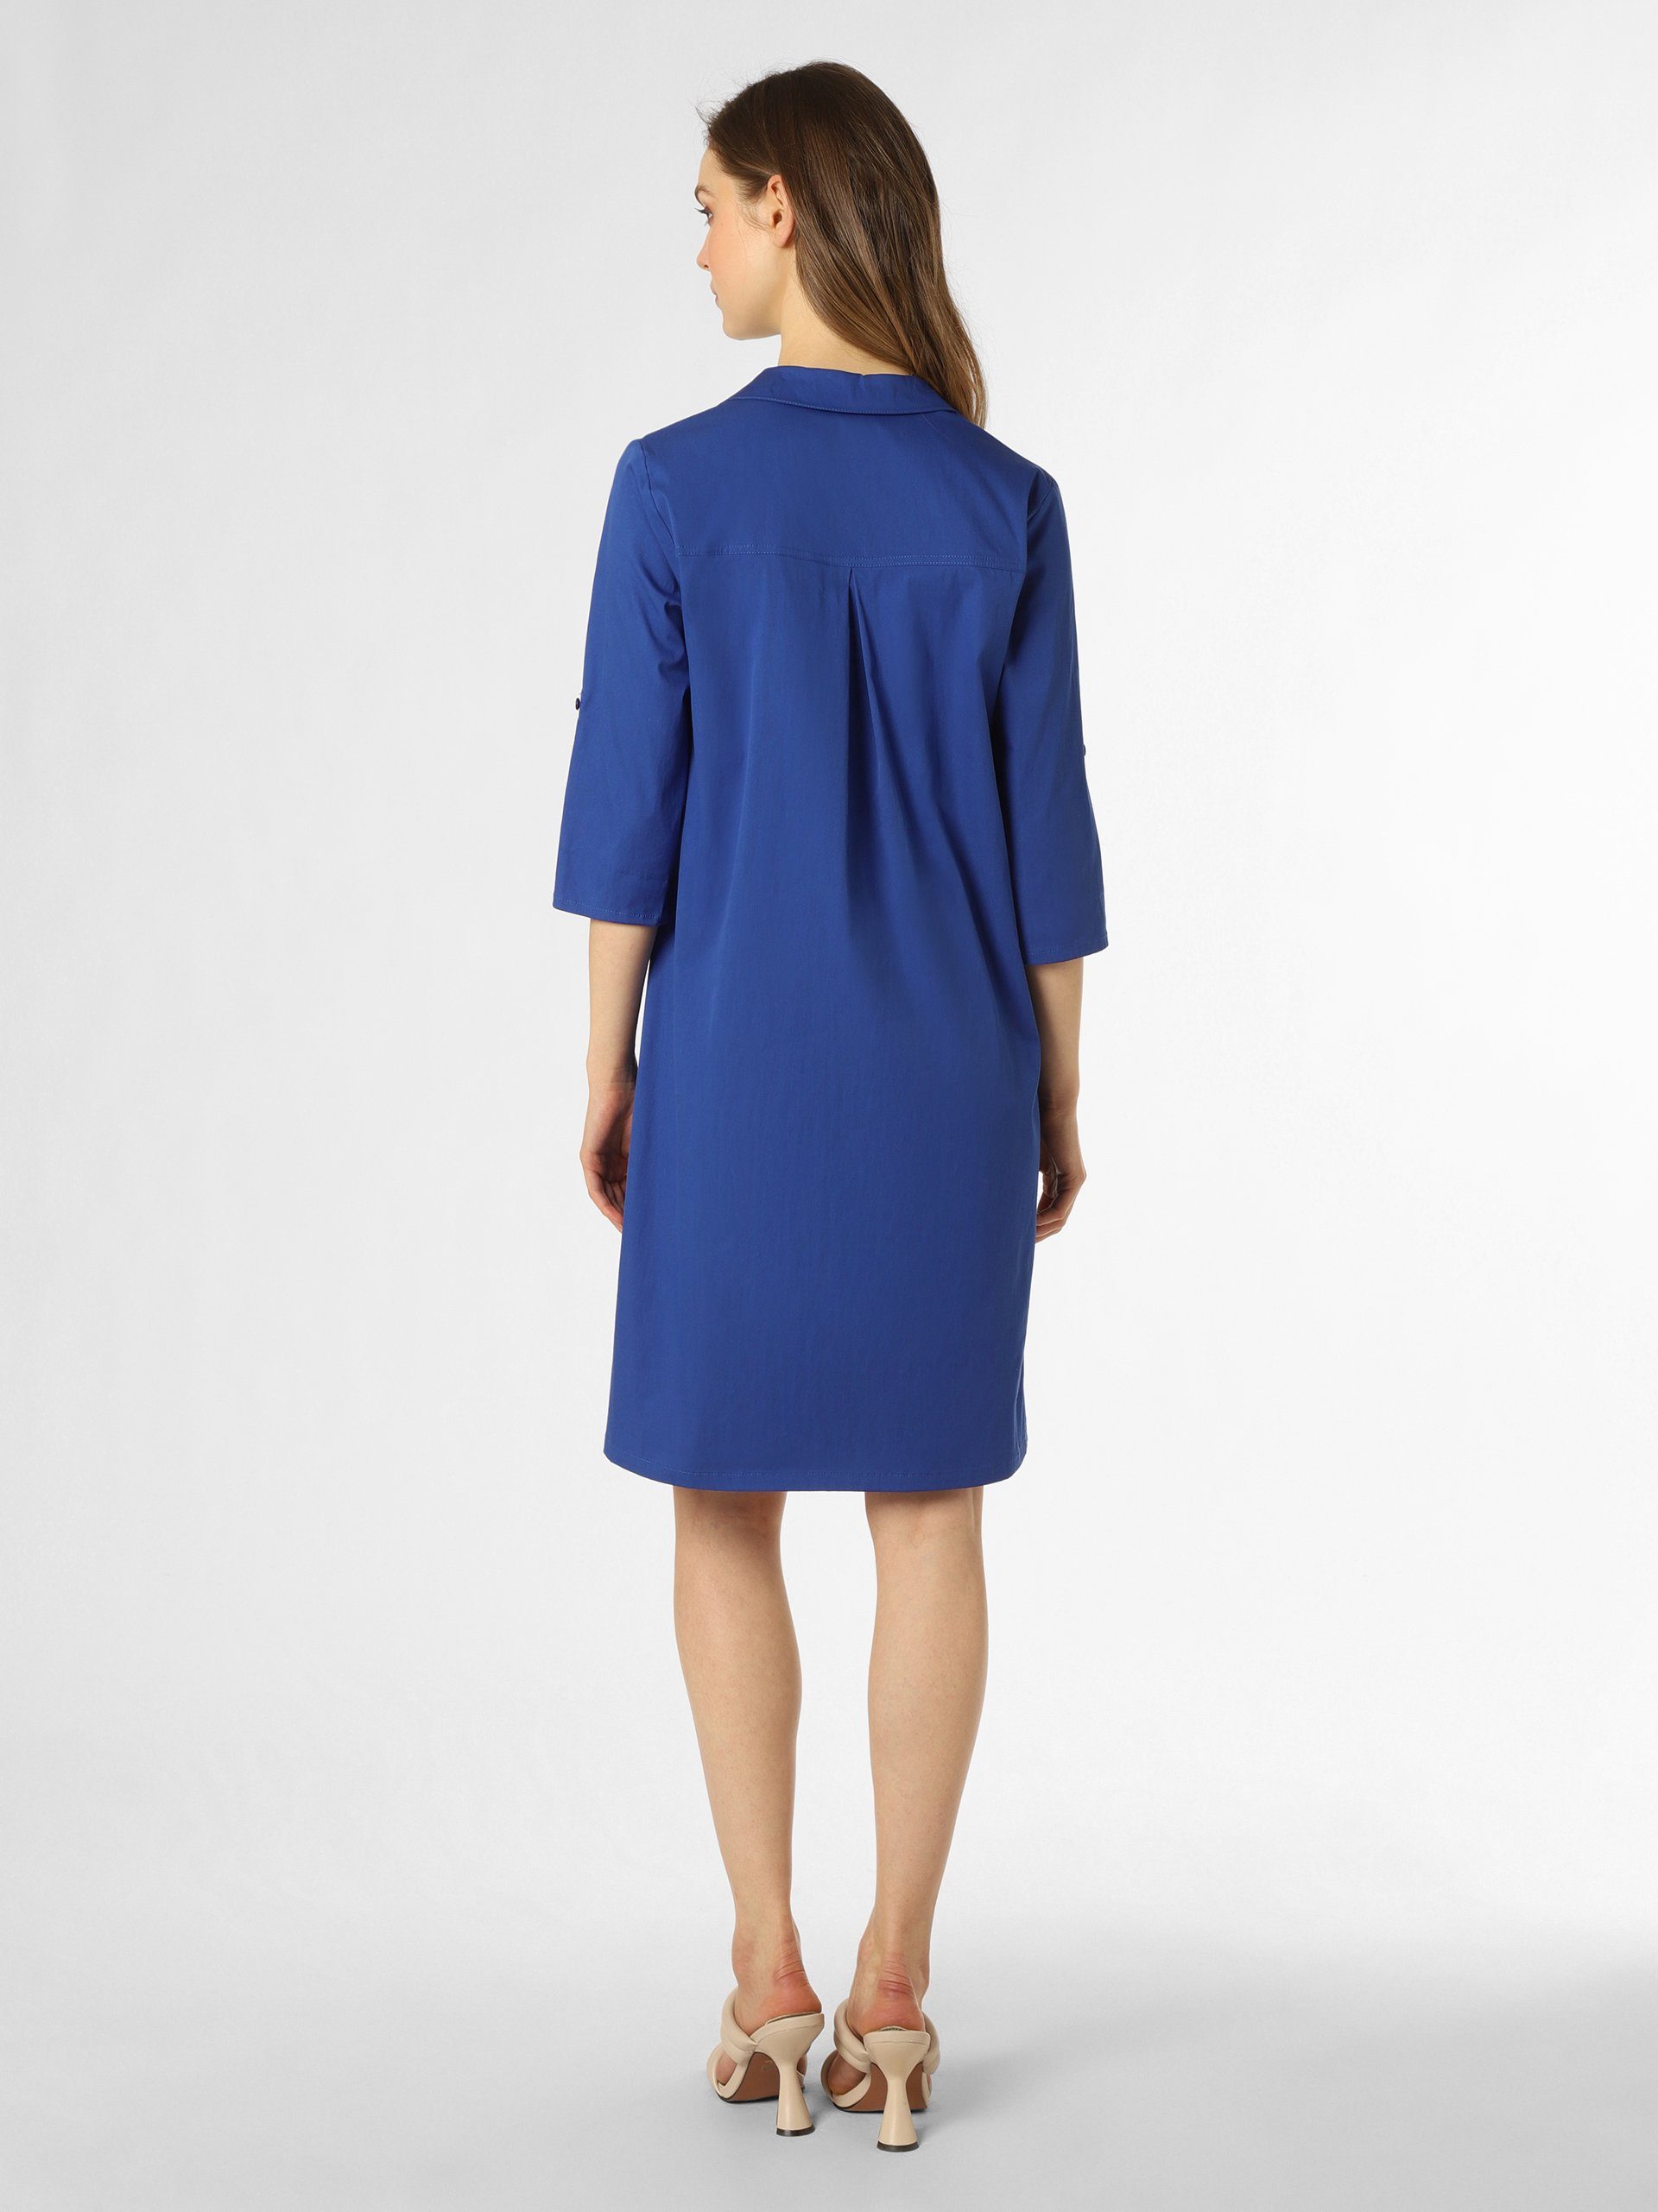 Robe Légère dunkelblau A-Linien-Kleid